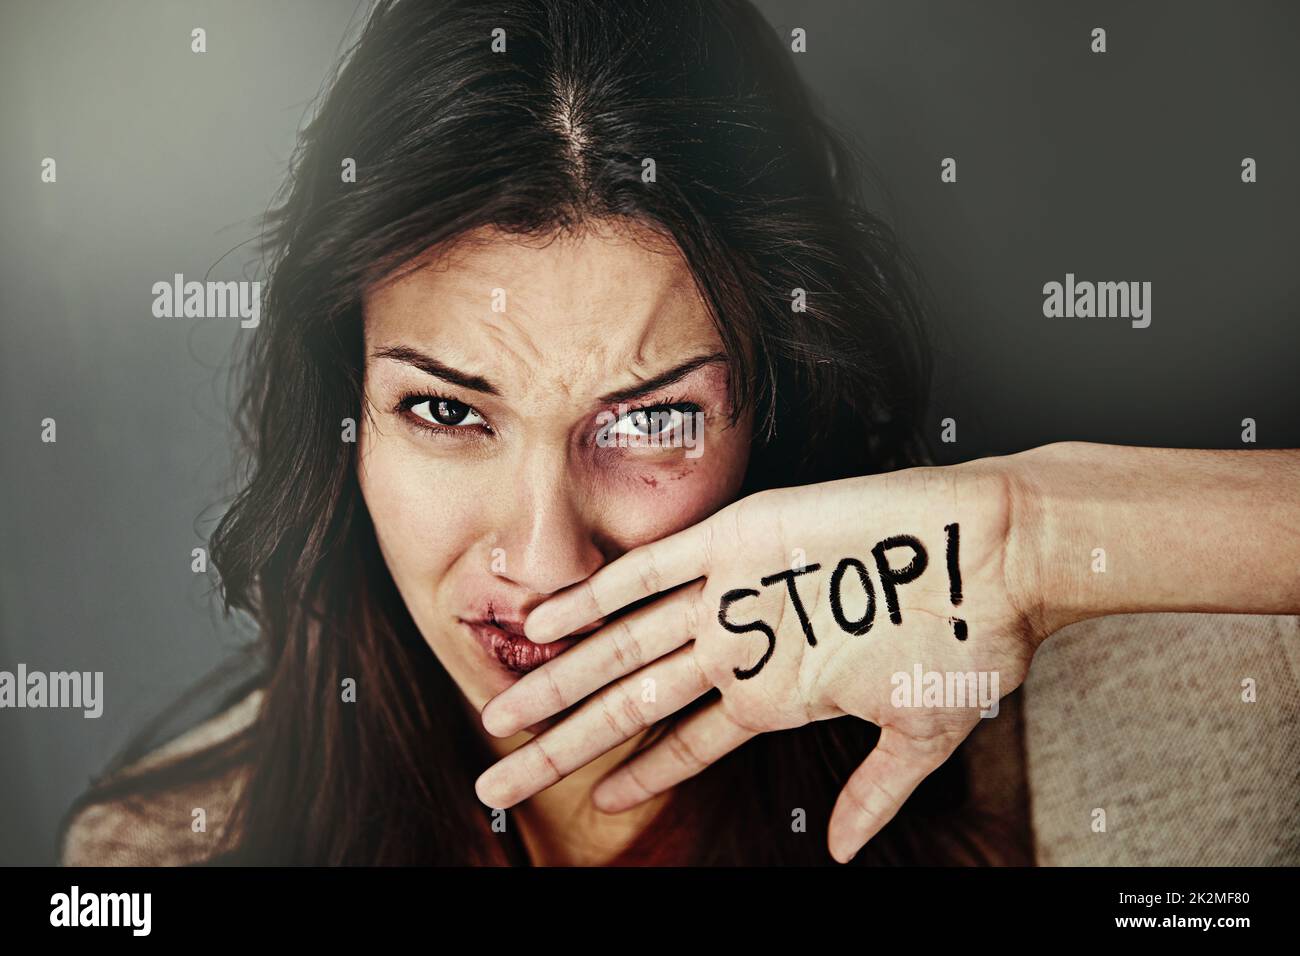 Es ist an der Zeit, dem häuslichen Missbrauch ein Ende zu setzen. Porträt einer verprügelten und gequetschten jungen Frau mit dem Wort STOP auf der Hand. Stockfoto